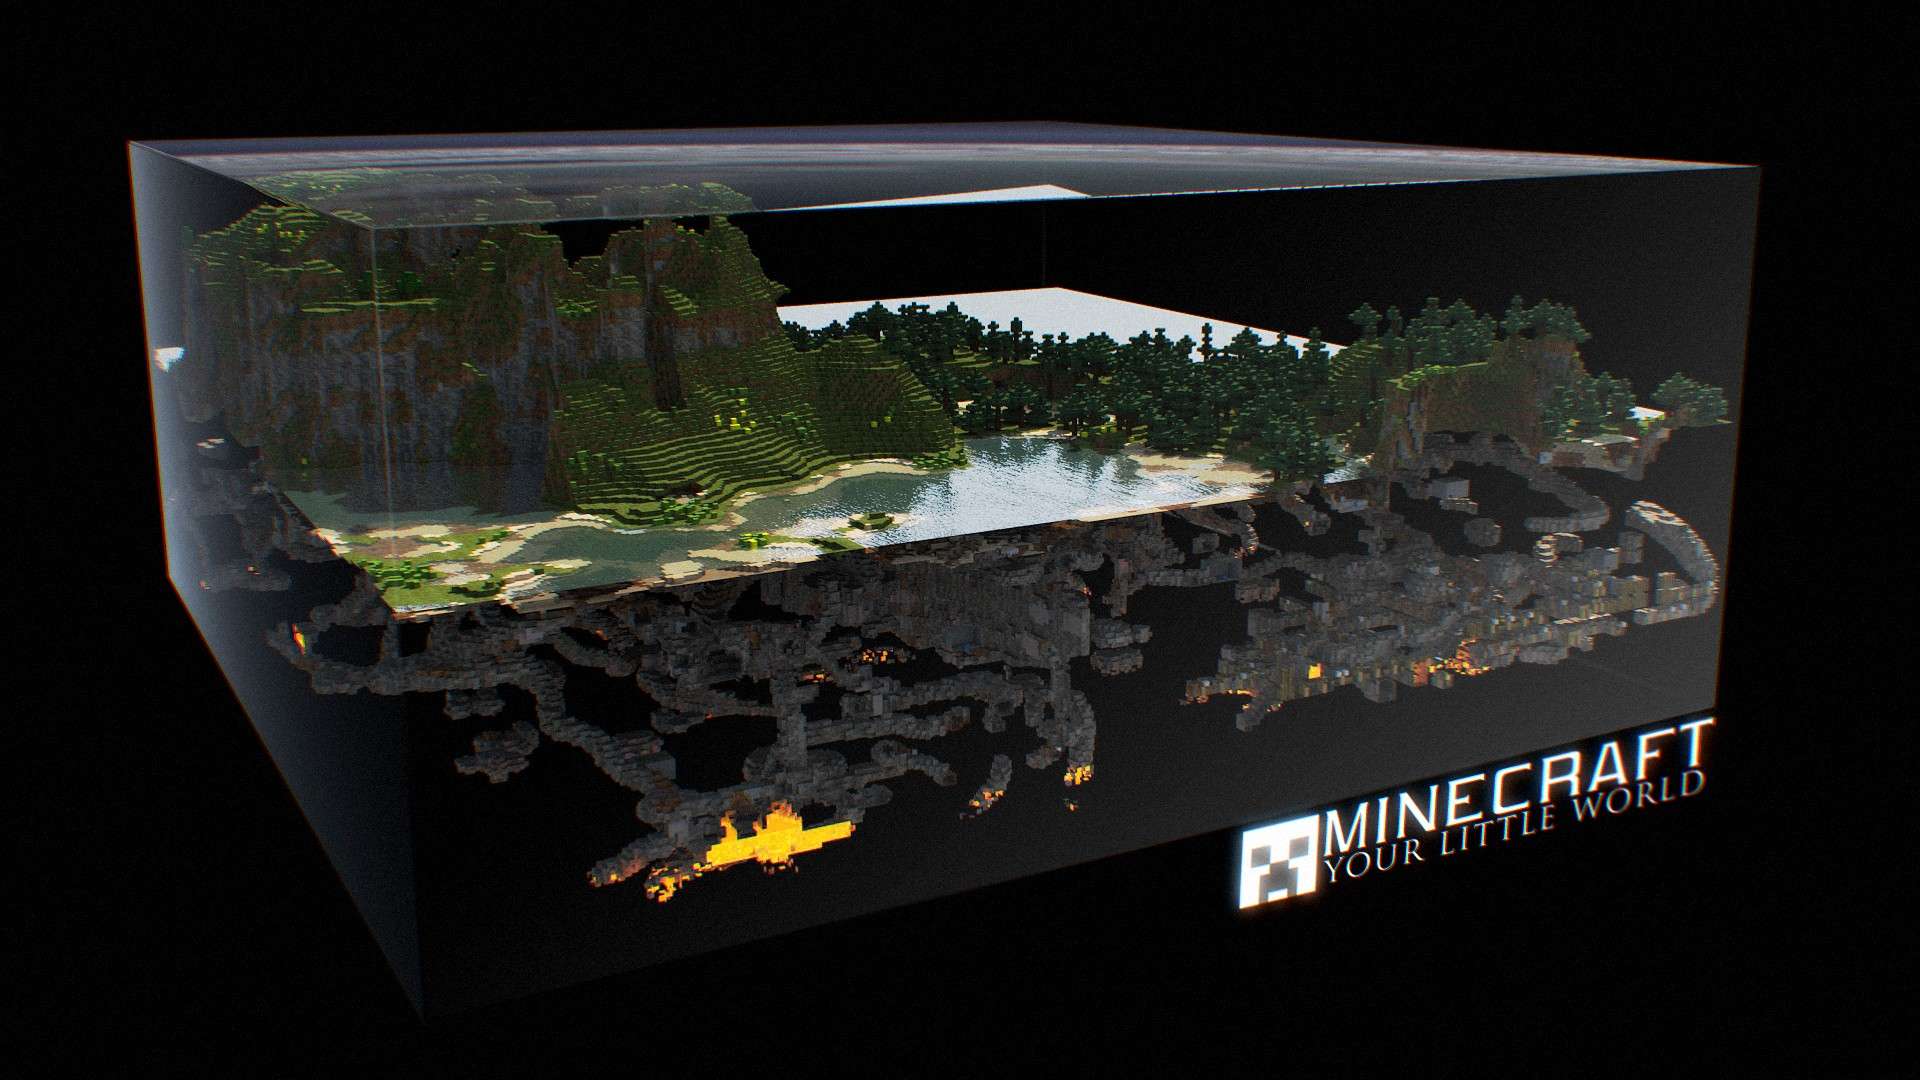 Minecraft 3d World HD Wallpaper FullHDwpp Full